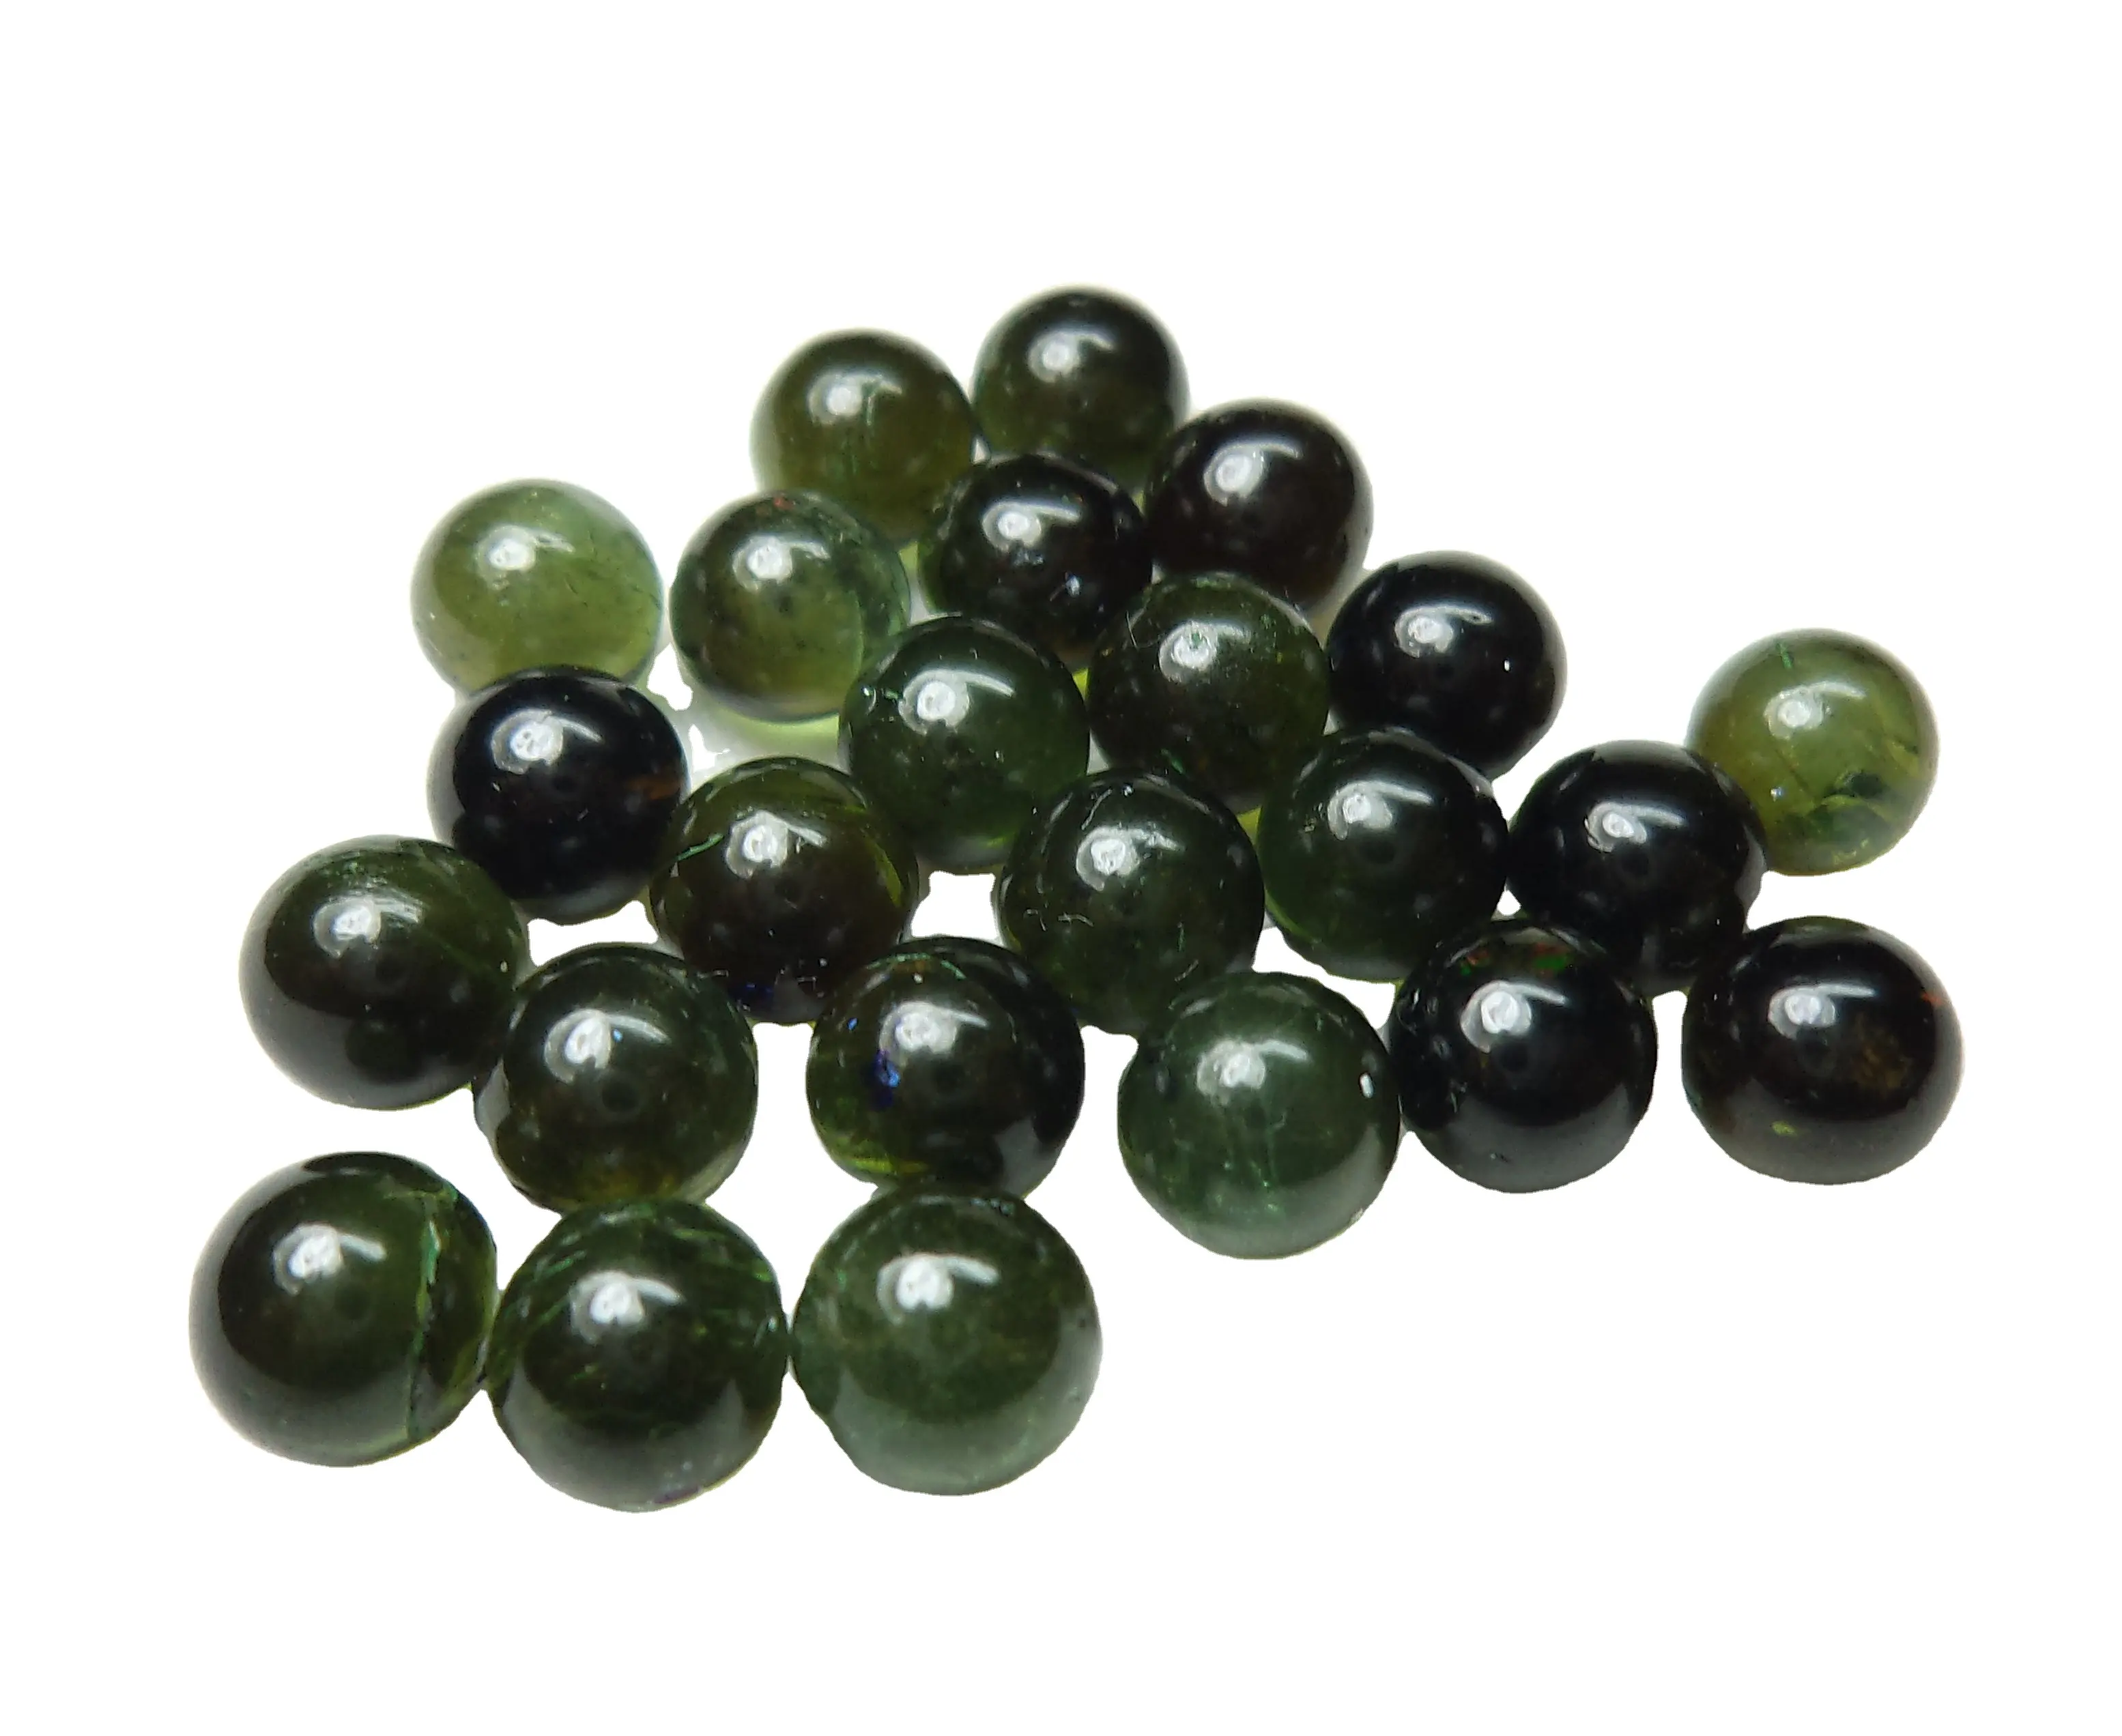 Yeşil turmalin doğal pürüzsüz yuvarlak Cabochon topu şekli gevşek taş kaliteli Birthstone takı yapımı için düşük fiyat